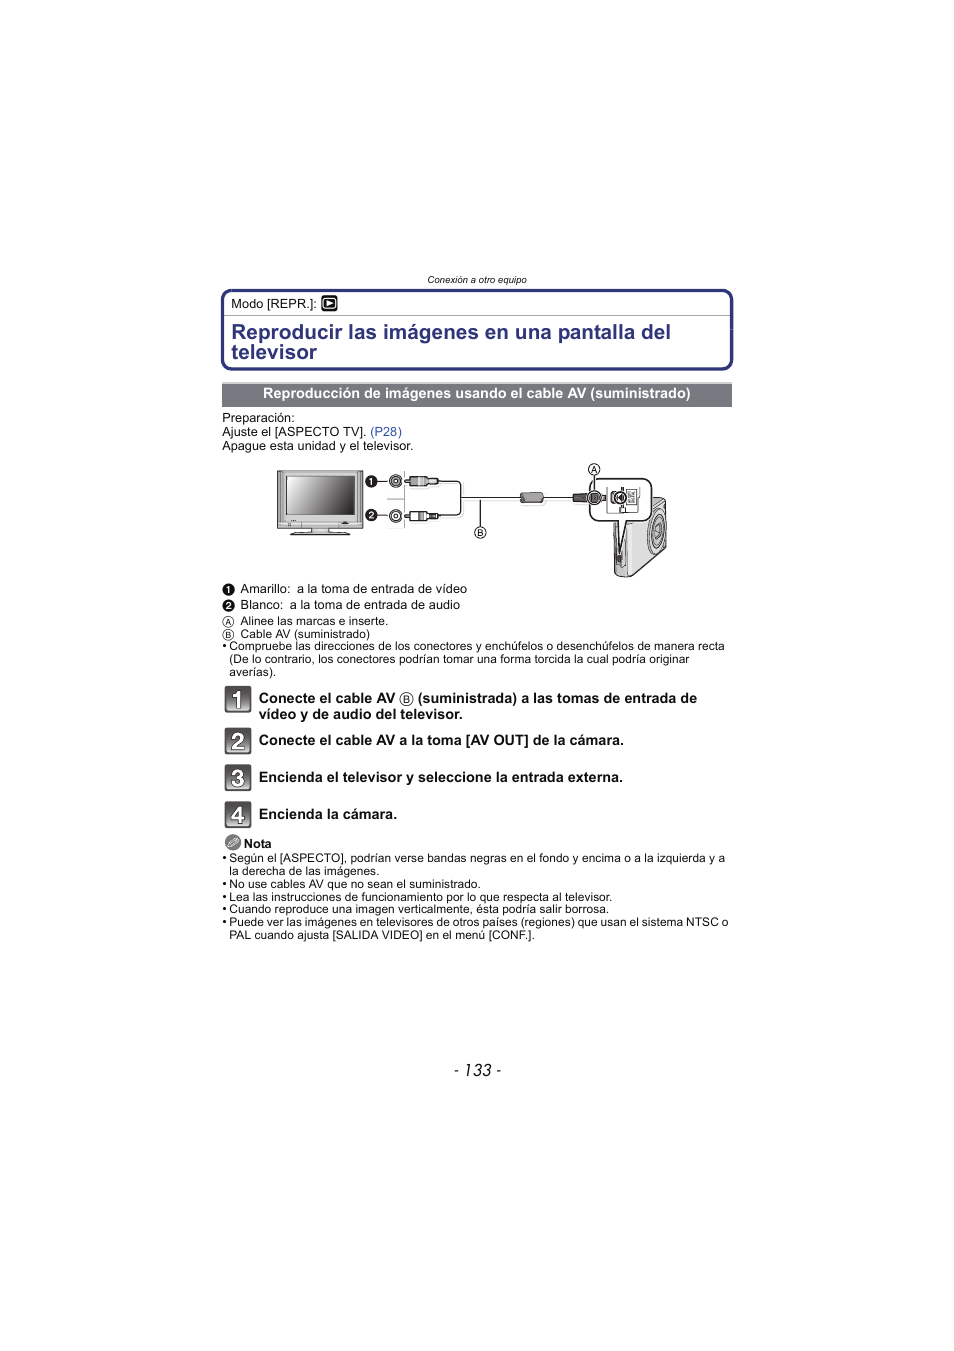 Reproducción de imágenes usando, El cable av (suministrado) | Panasonic DMCFX48 Manual del usuario | Página 133 / 160